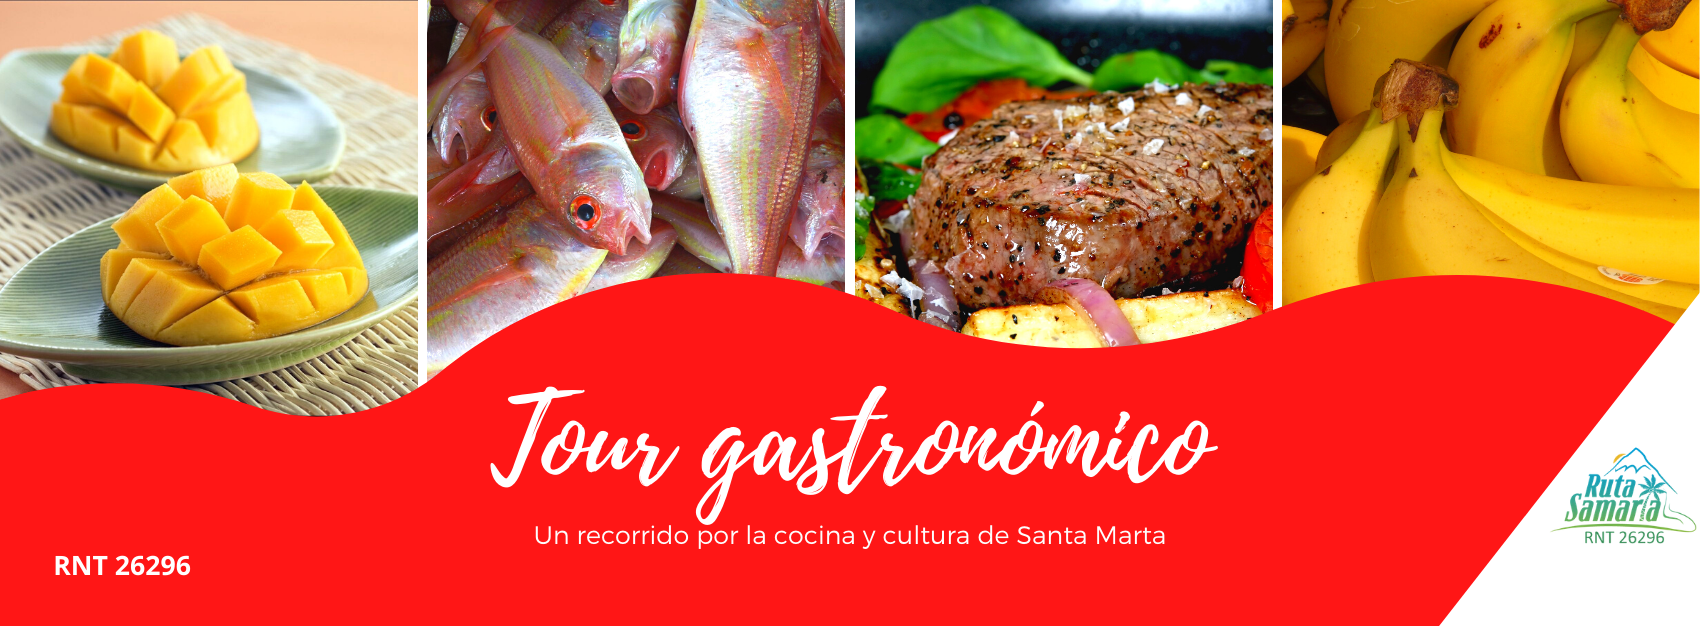 Tour Gastronómico en Santa Marta